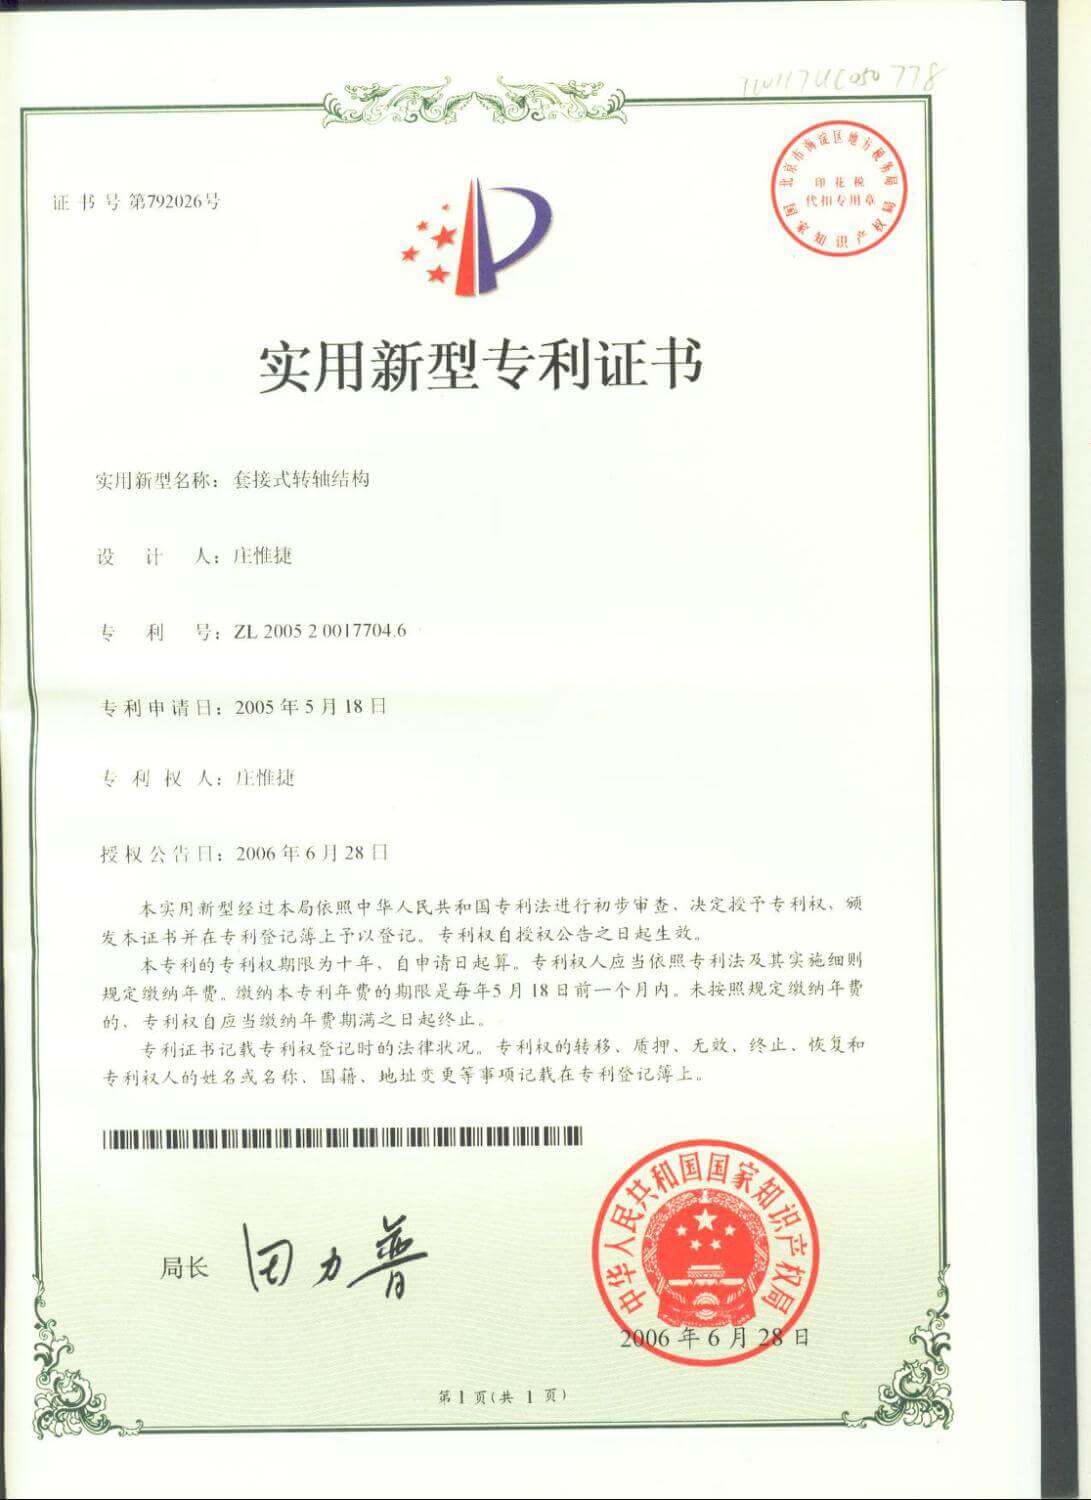 Chienfu-tec CNC patents in Taiwan-30